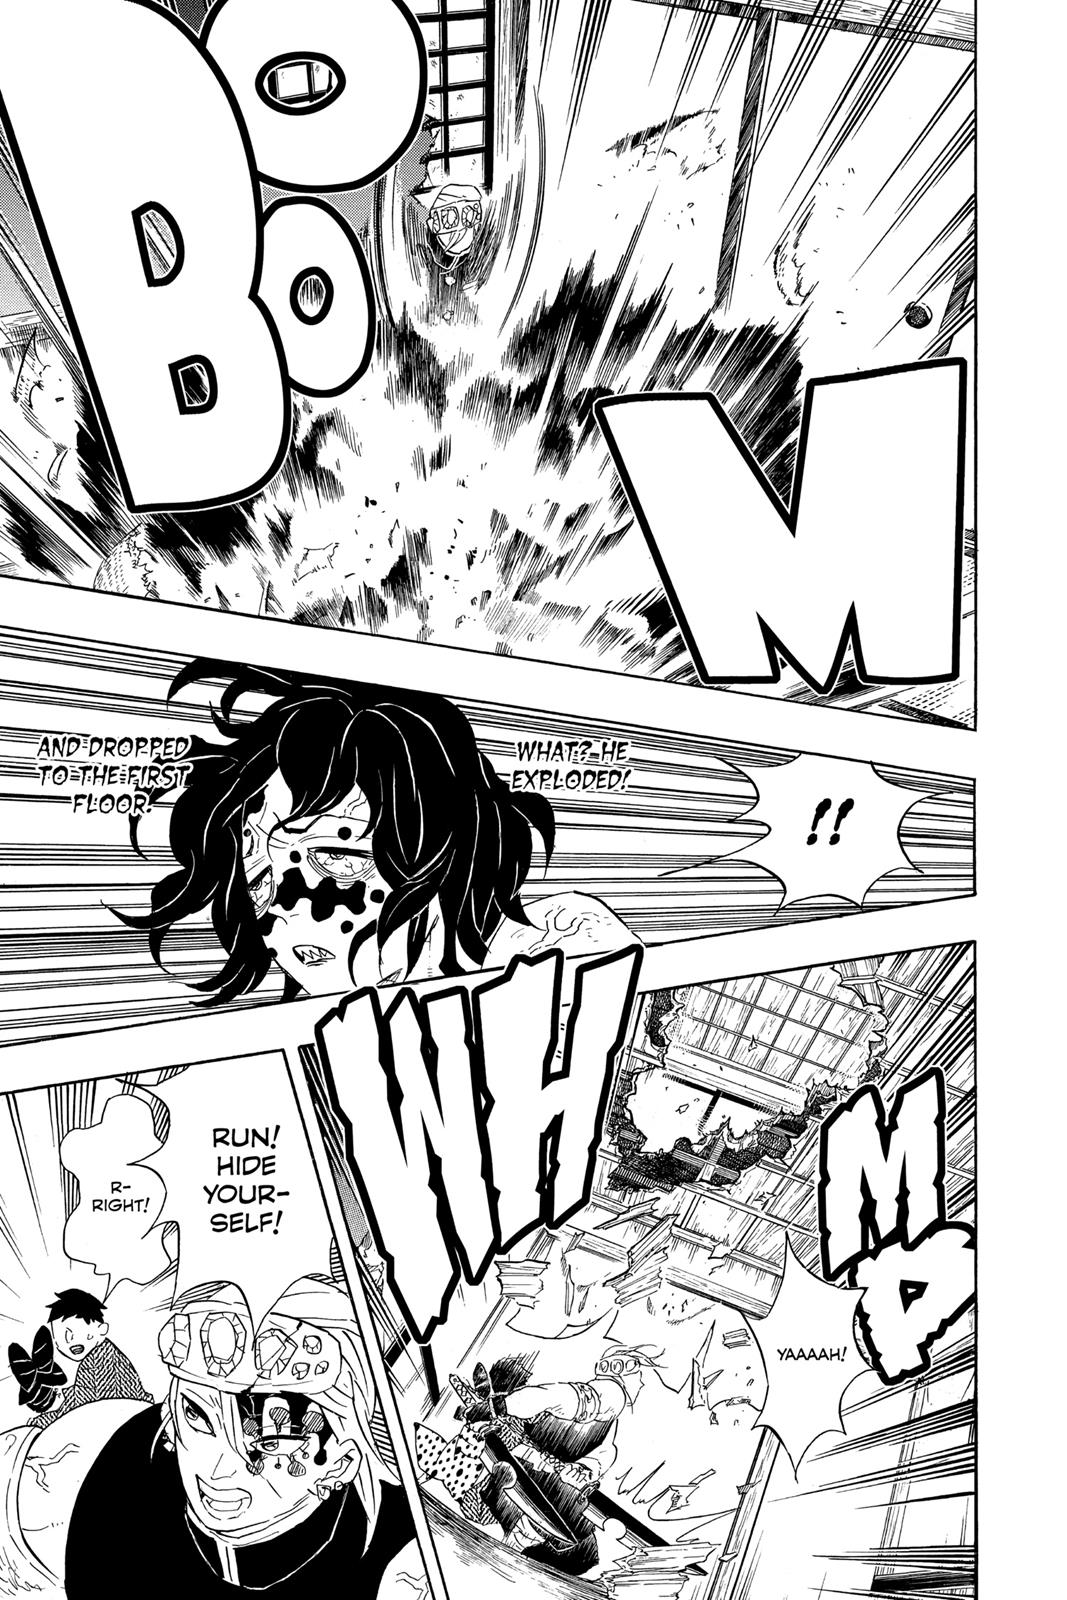 Demon Slayer Manga Manga Chapter - 86 - image 11